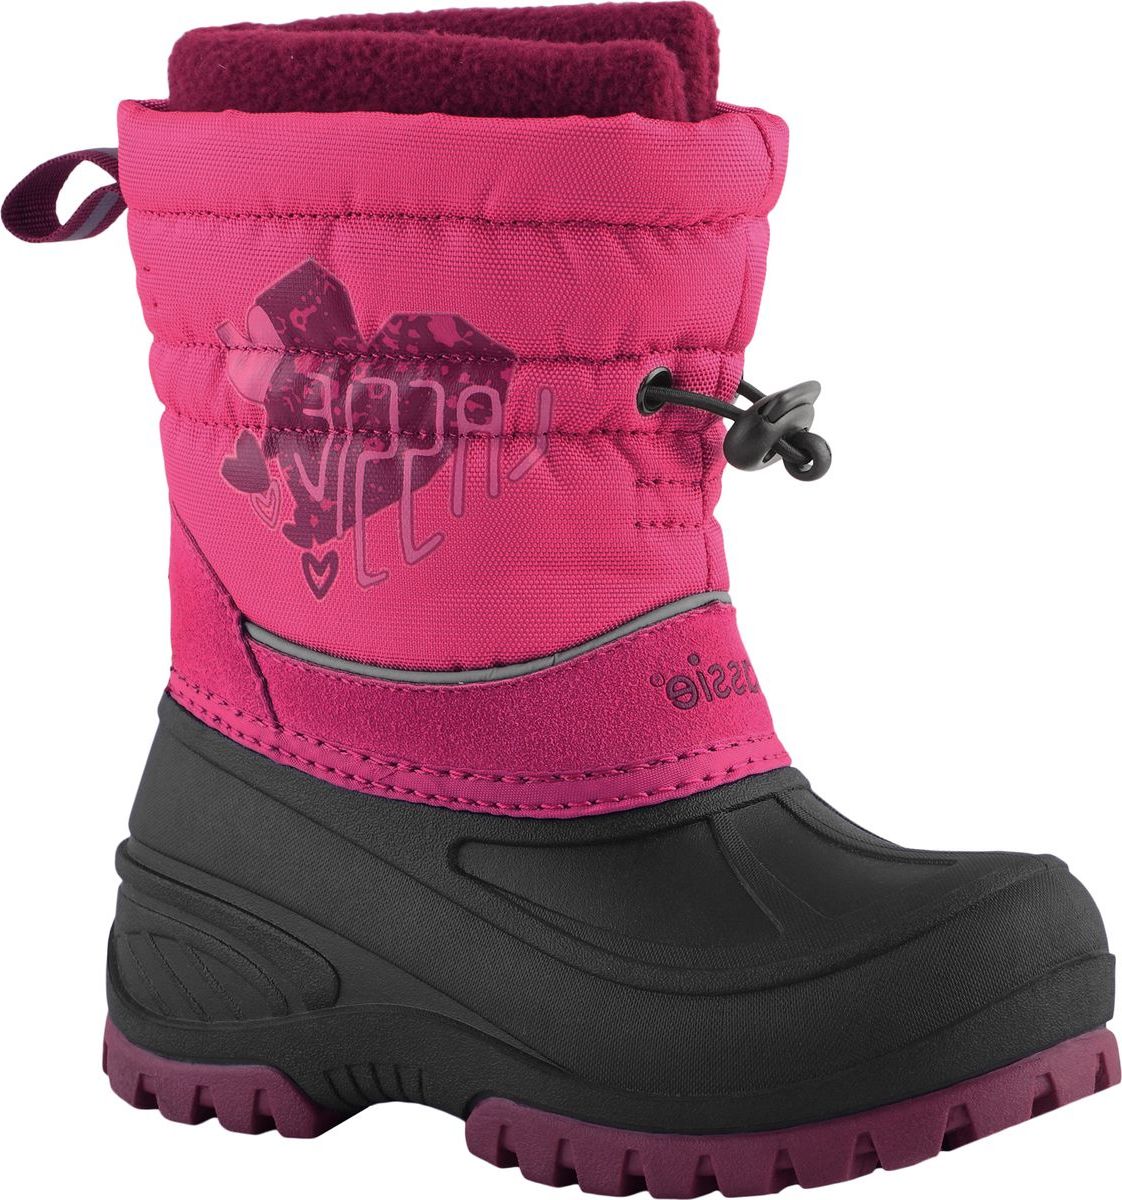 Ботинки детские Lassie Coldwell, цвет: розовый. 7691214690. Размер 32